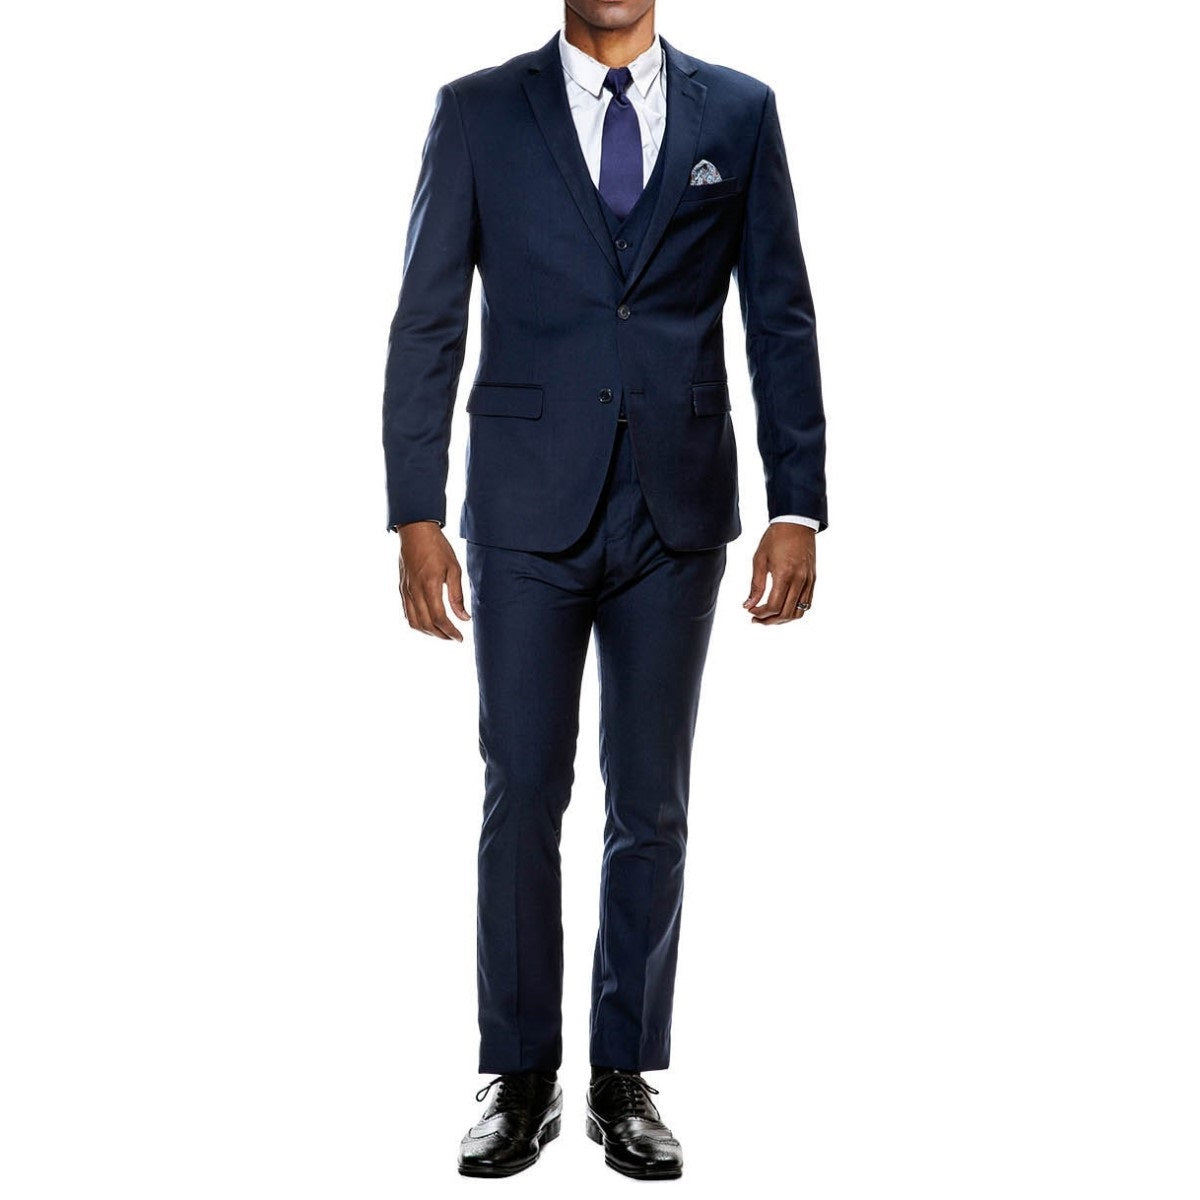 Traje Formal para Hombre TA-M282SK-02 - Formal Suit for Men